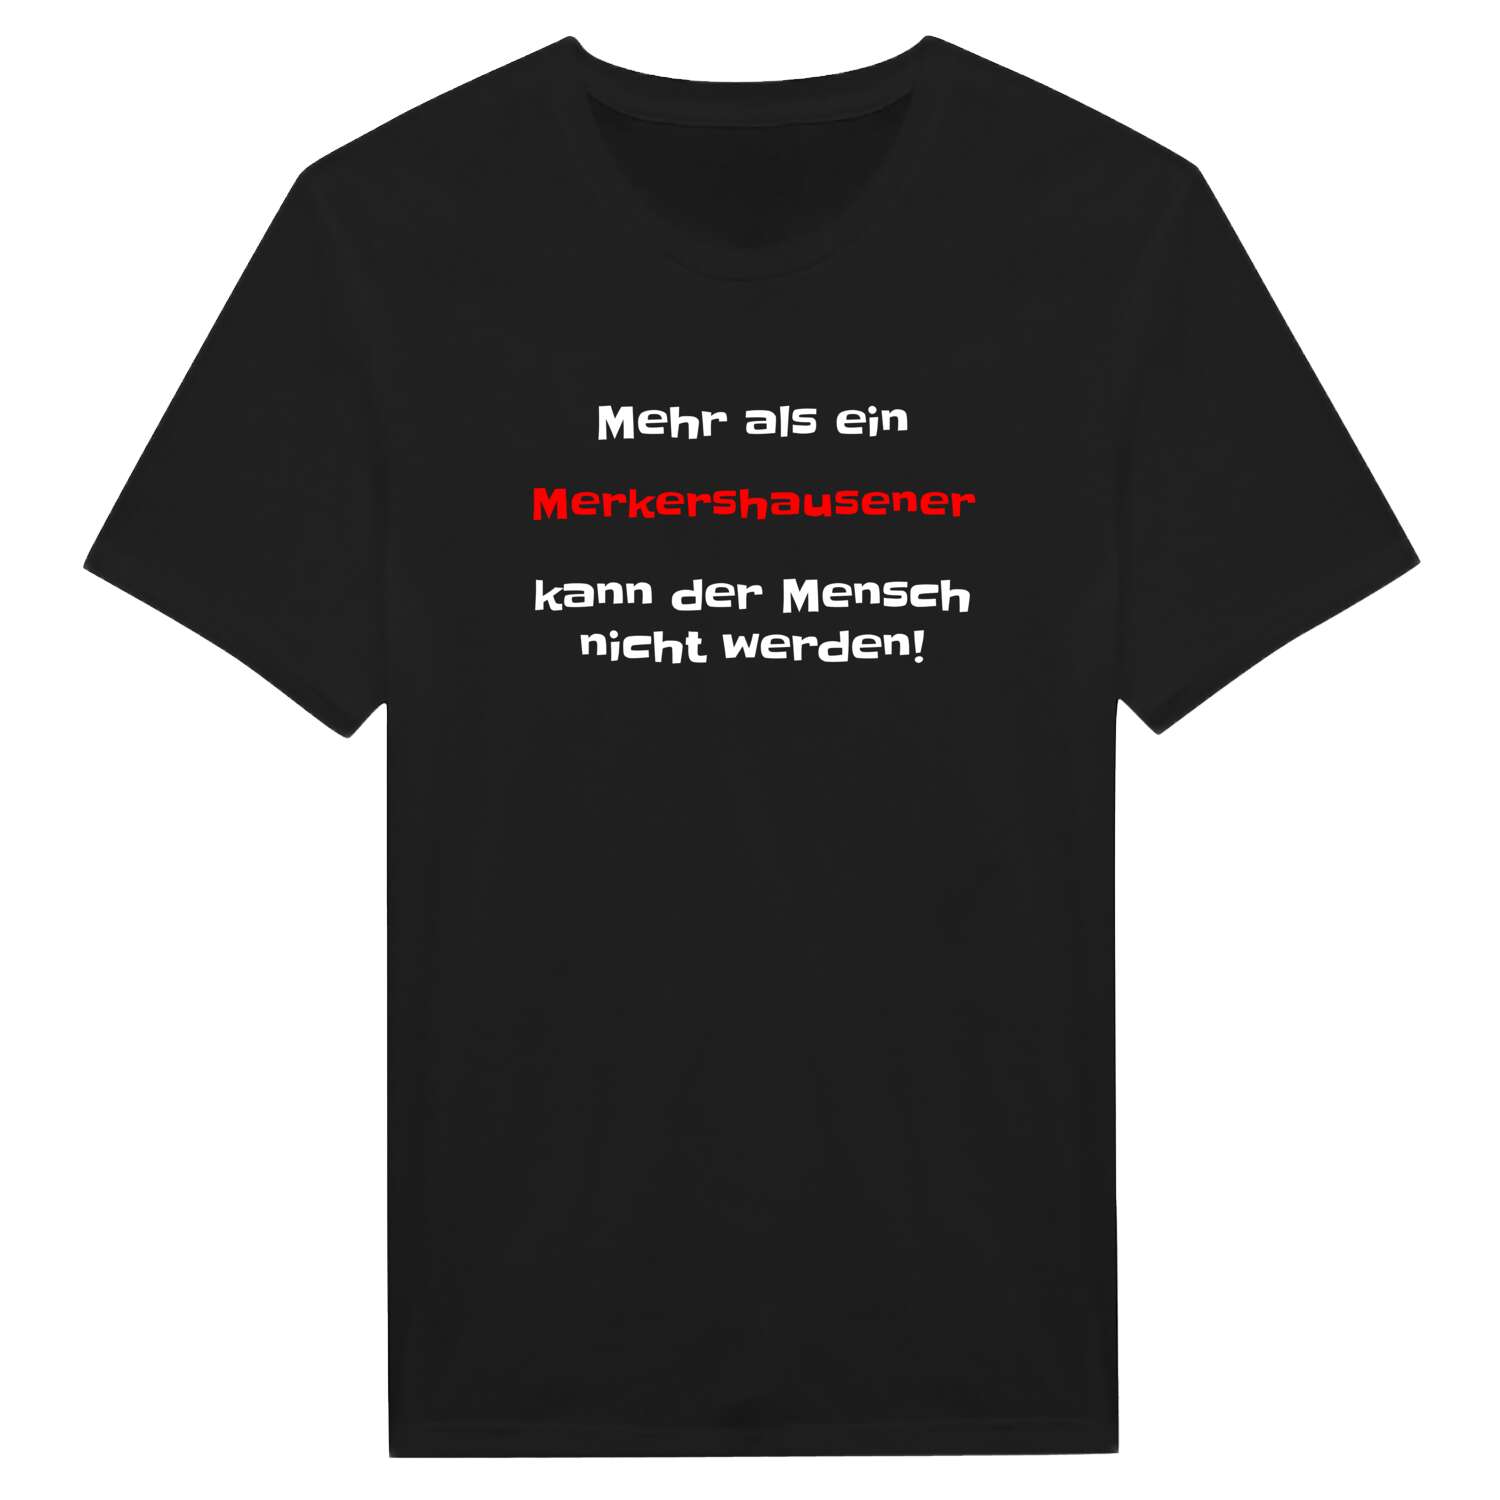 Merkershausen T-Shirt »Mehr als ein«